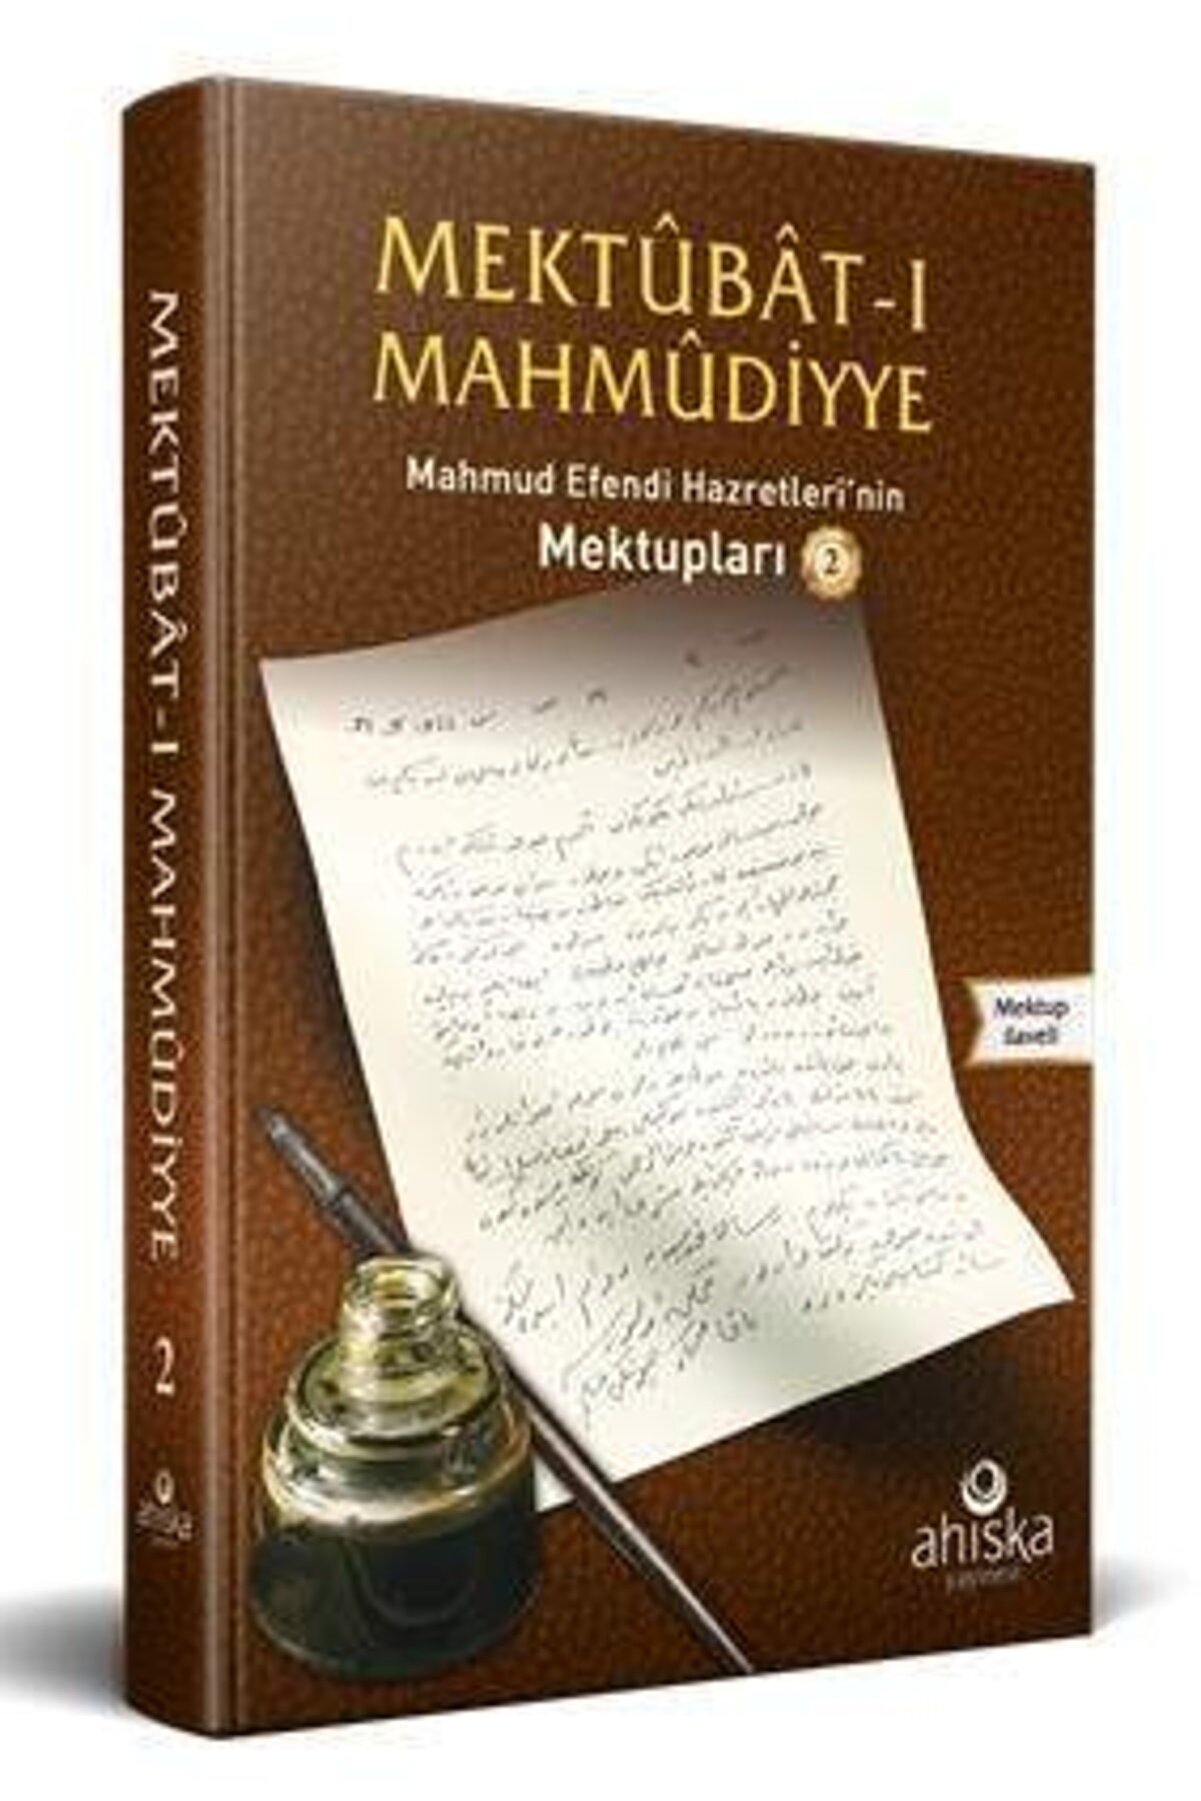 Ahıska Yayınevi Mektubatı Mahmudiyye 2. Cilt ; Mahmud Efendi Hazretlerinin Mektupları